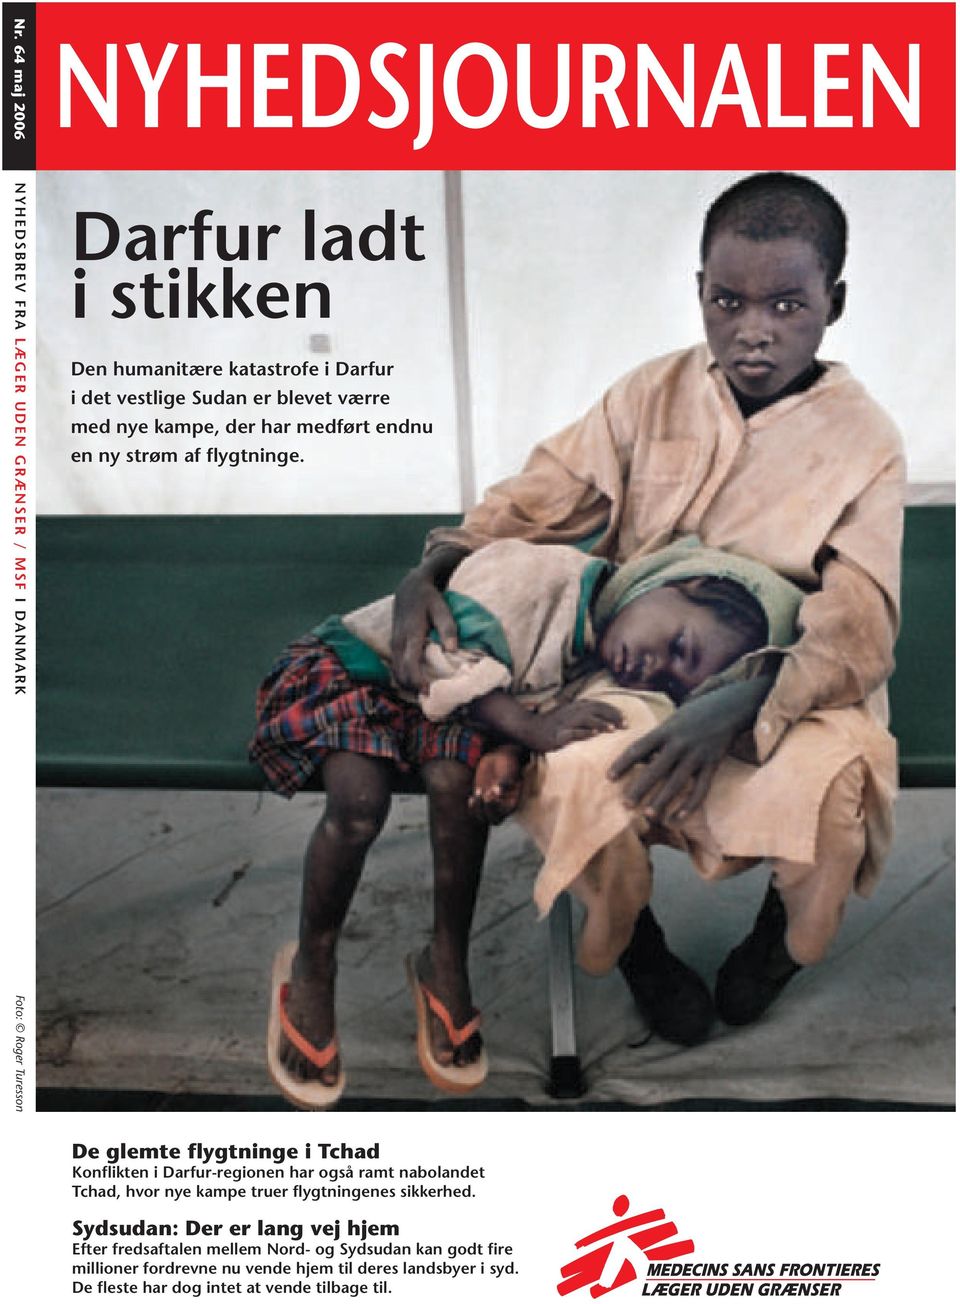 Foto: Roger Turesson De glemte flygtninge i Tchad Konflikten i Darfur-regionen har også ramt nabolandet Tchad, hvor nye kampe truer flygtningenes